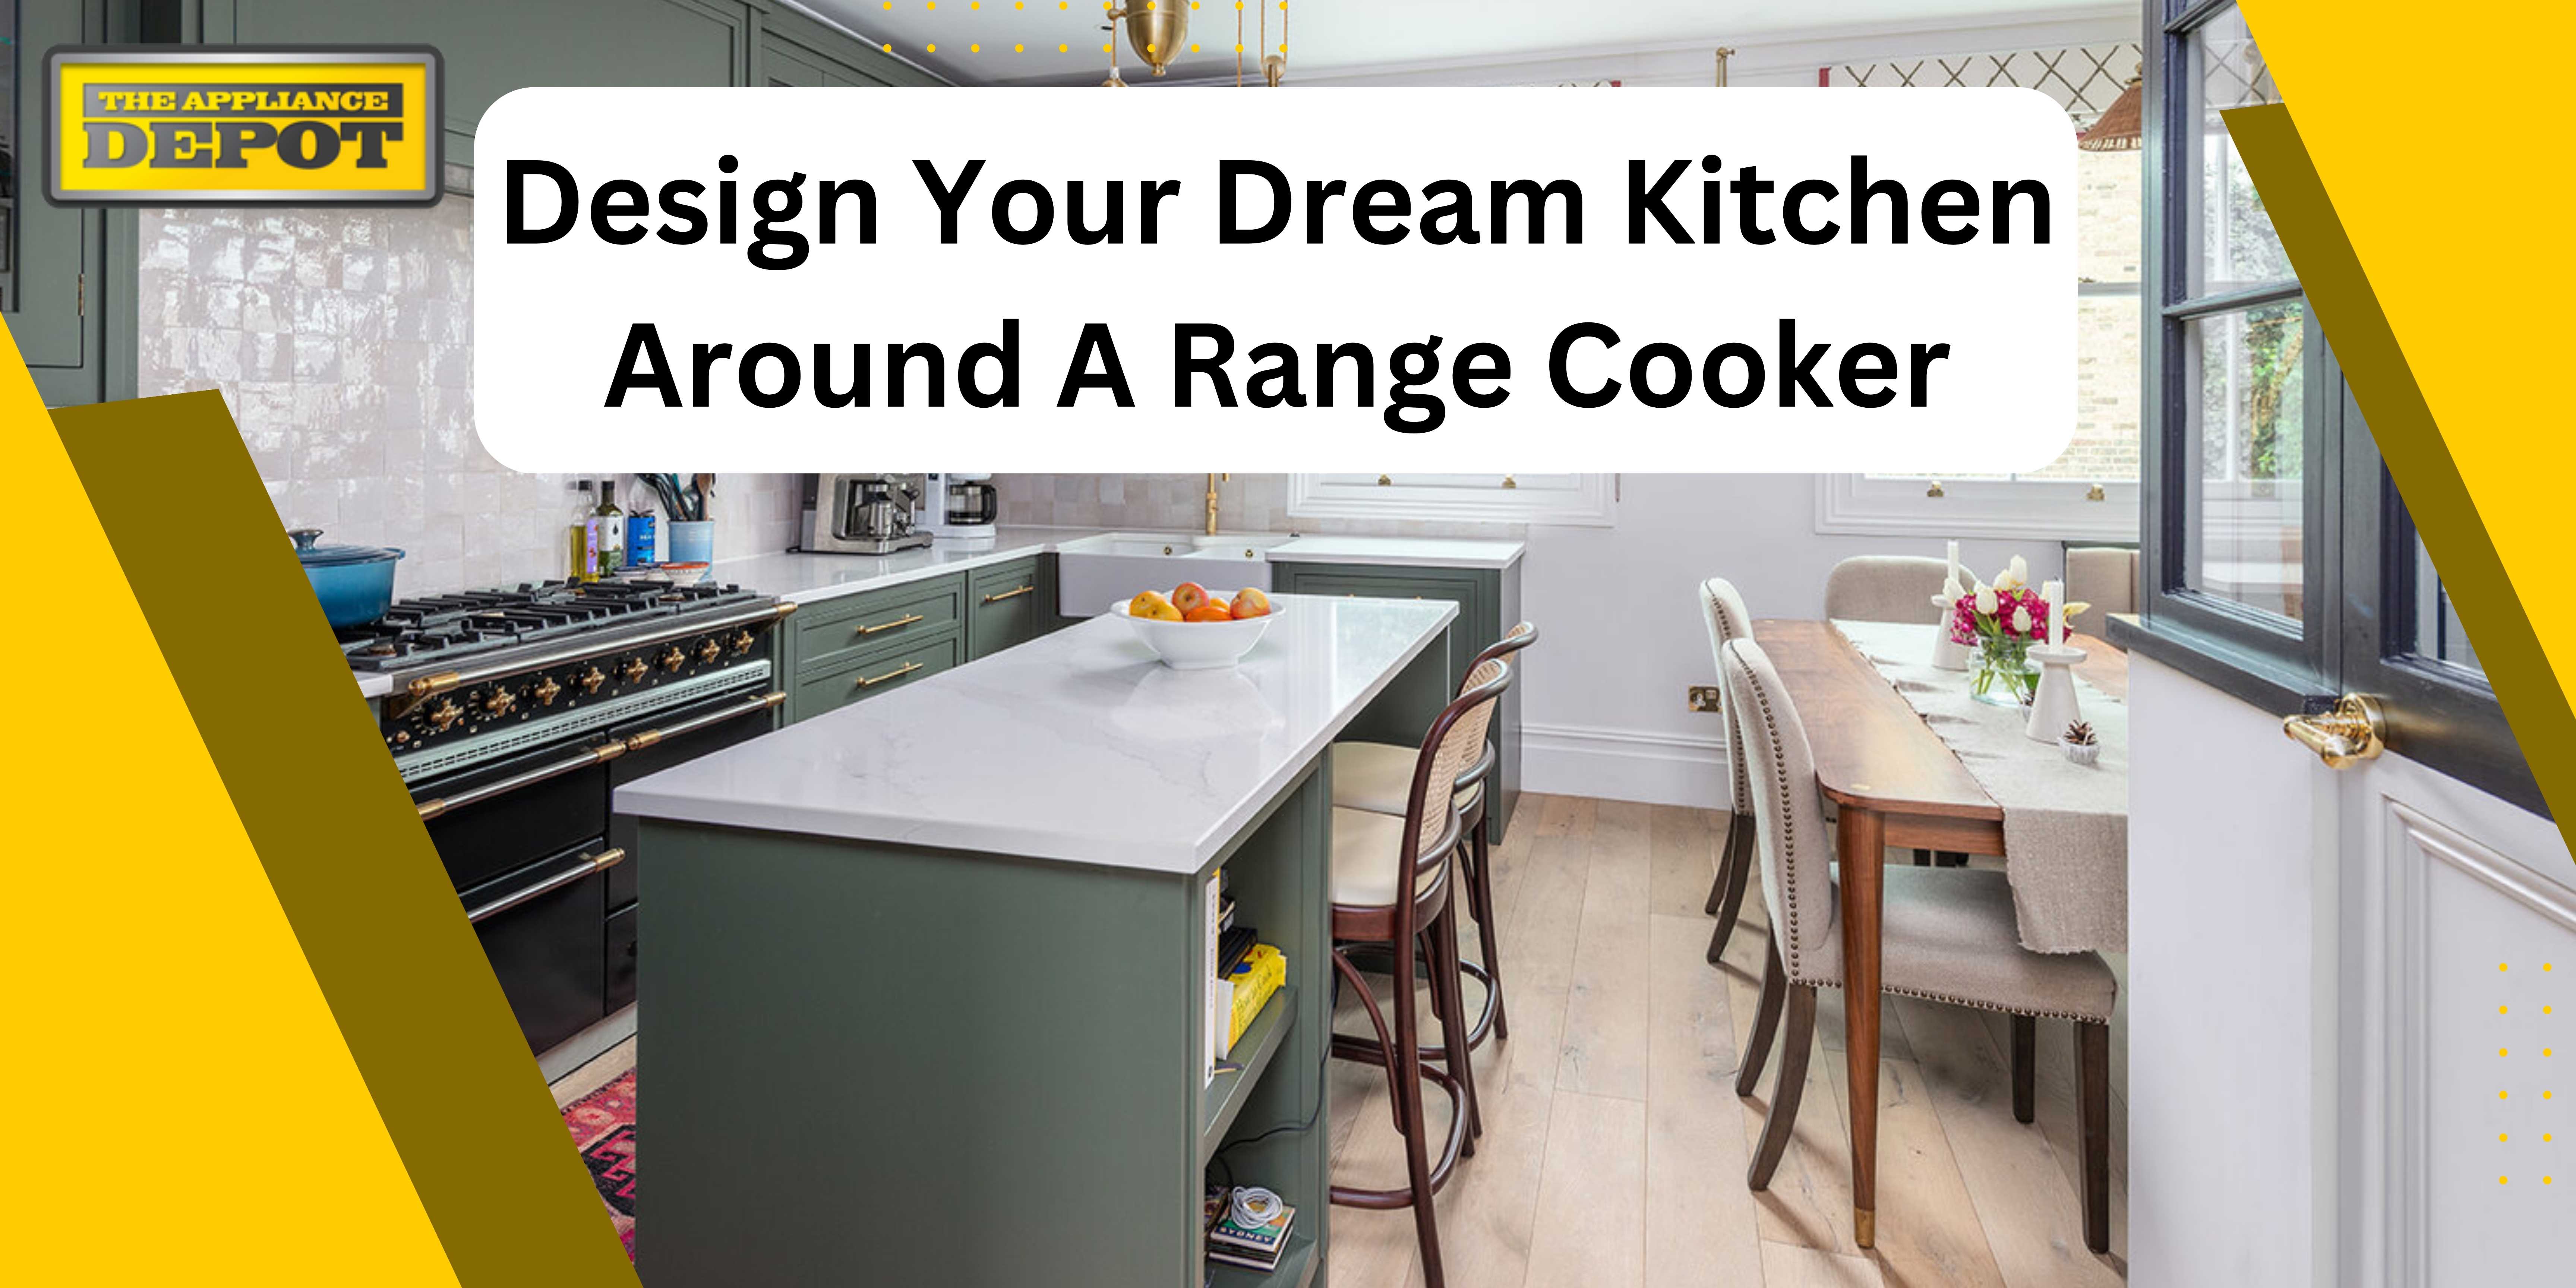 Design Your Dream Kitchen Around A Range Cooker